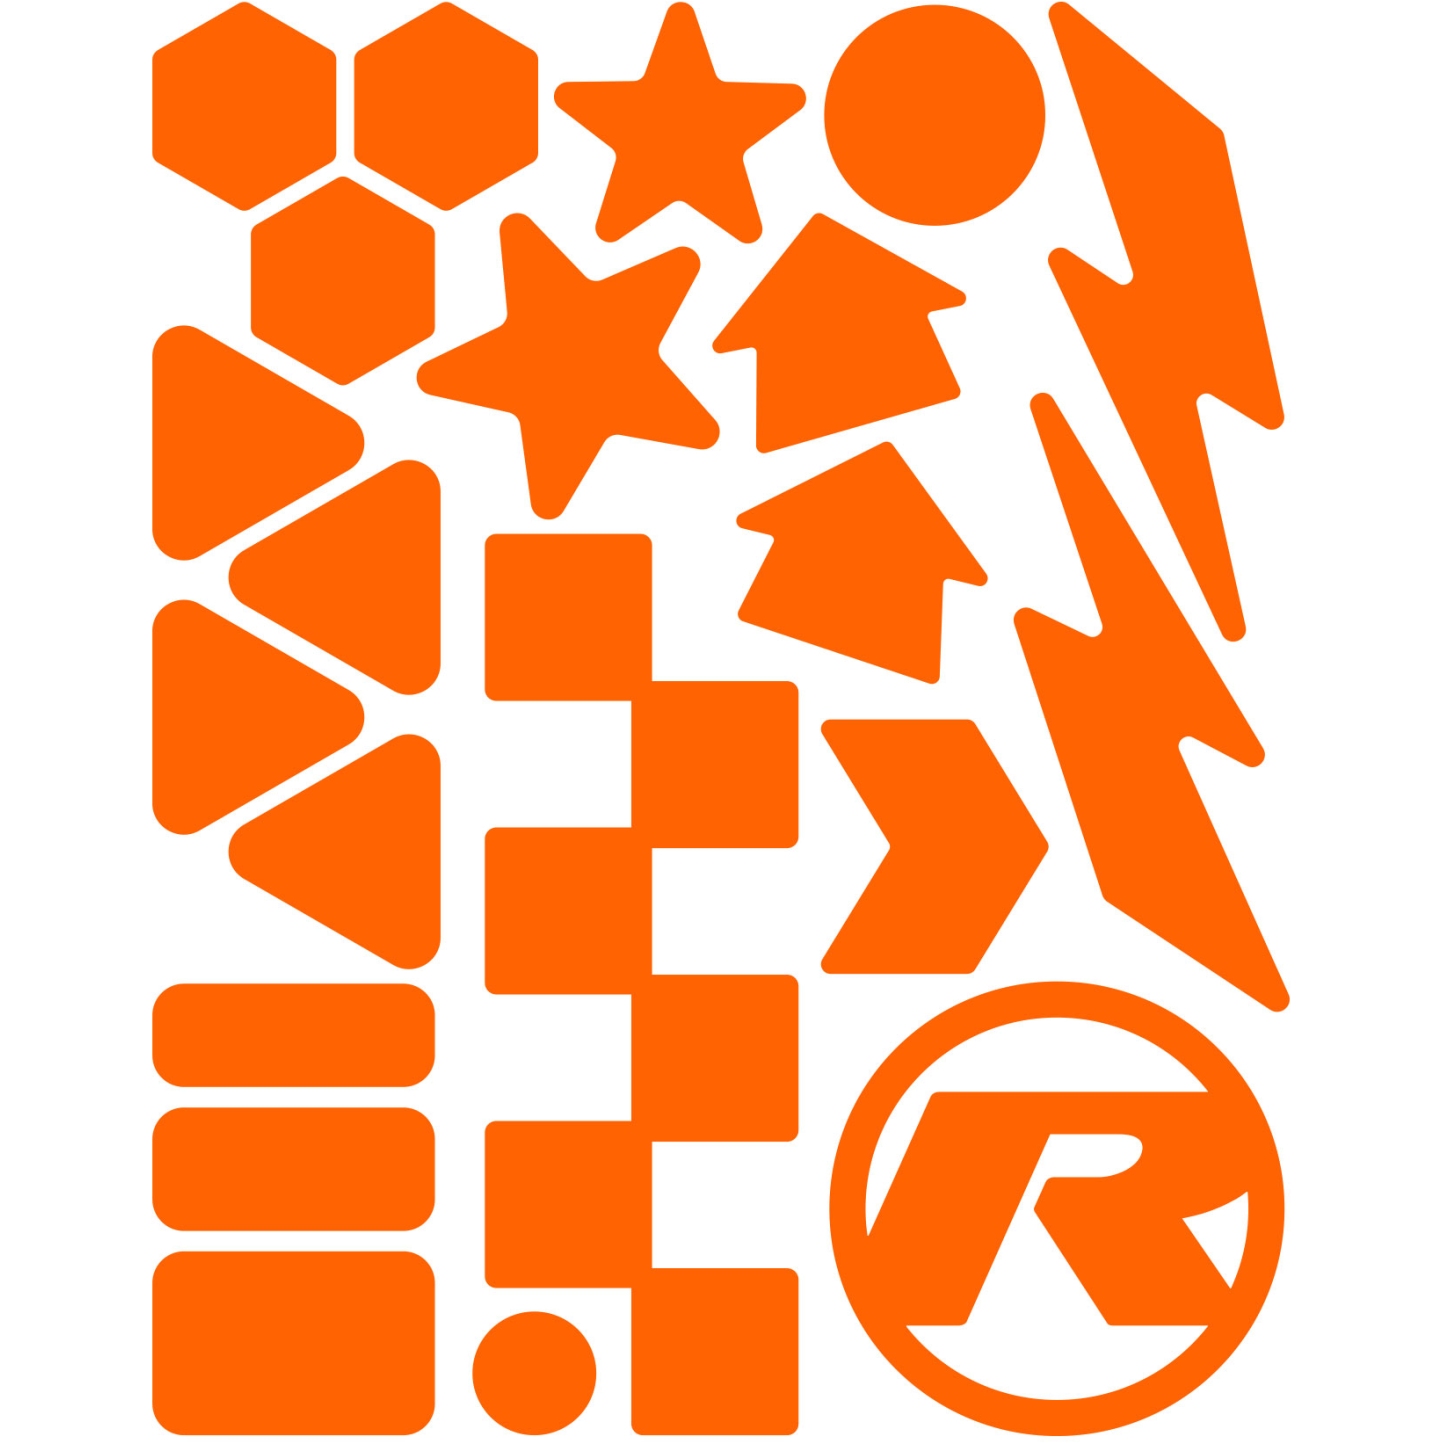 Produktbild von rie:sel design re:flex kids - Reflektierende Rahmensticker - forms orange